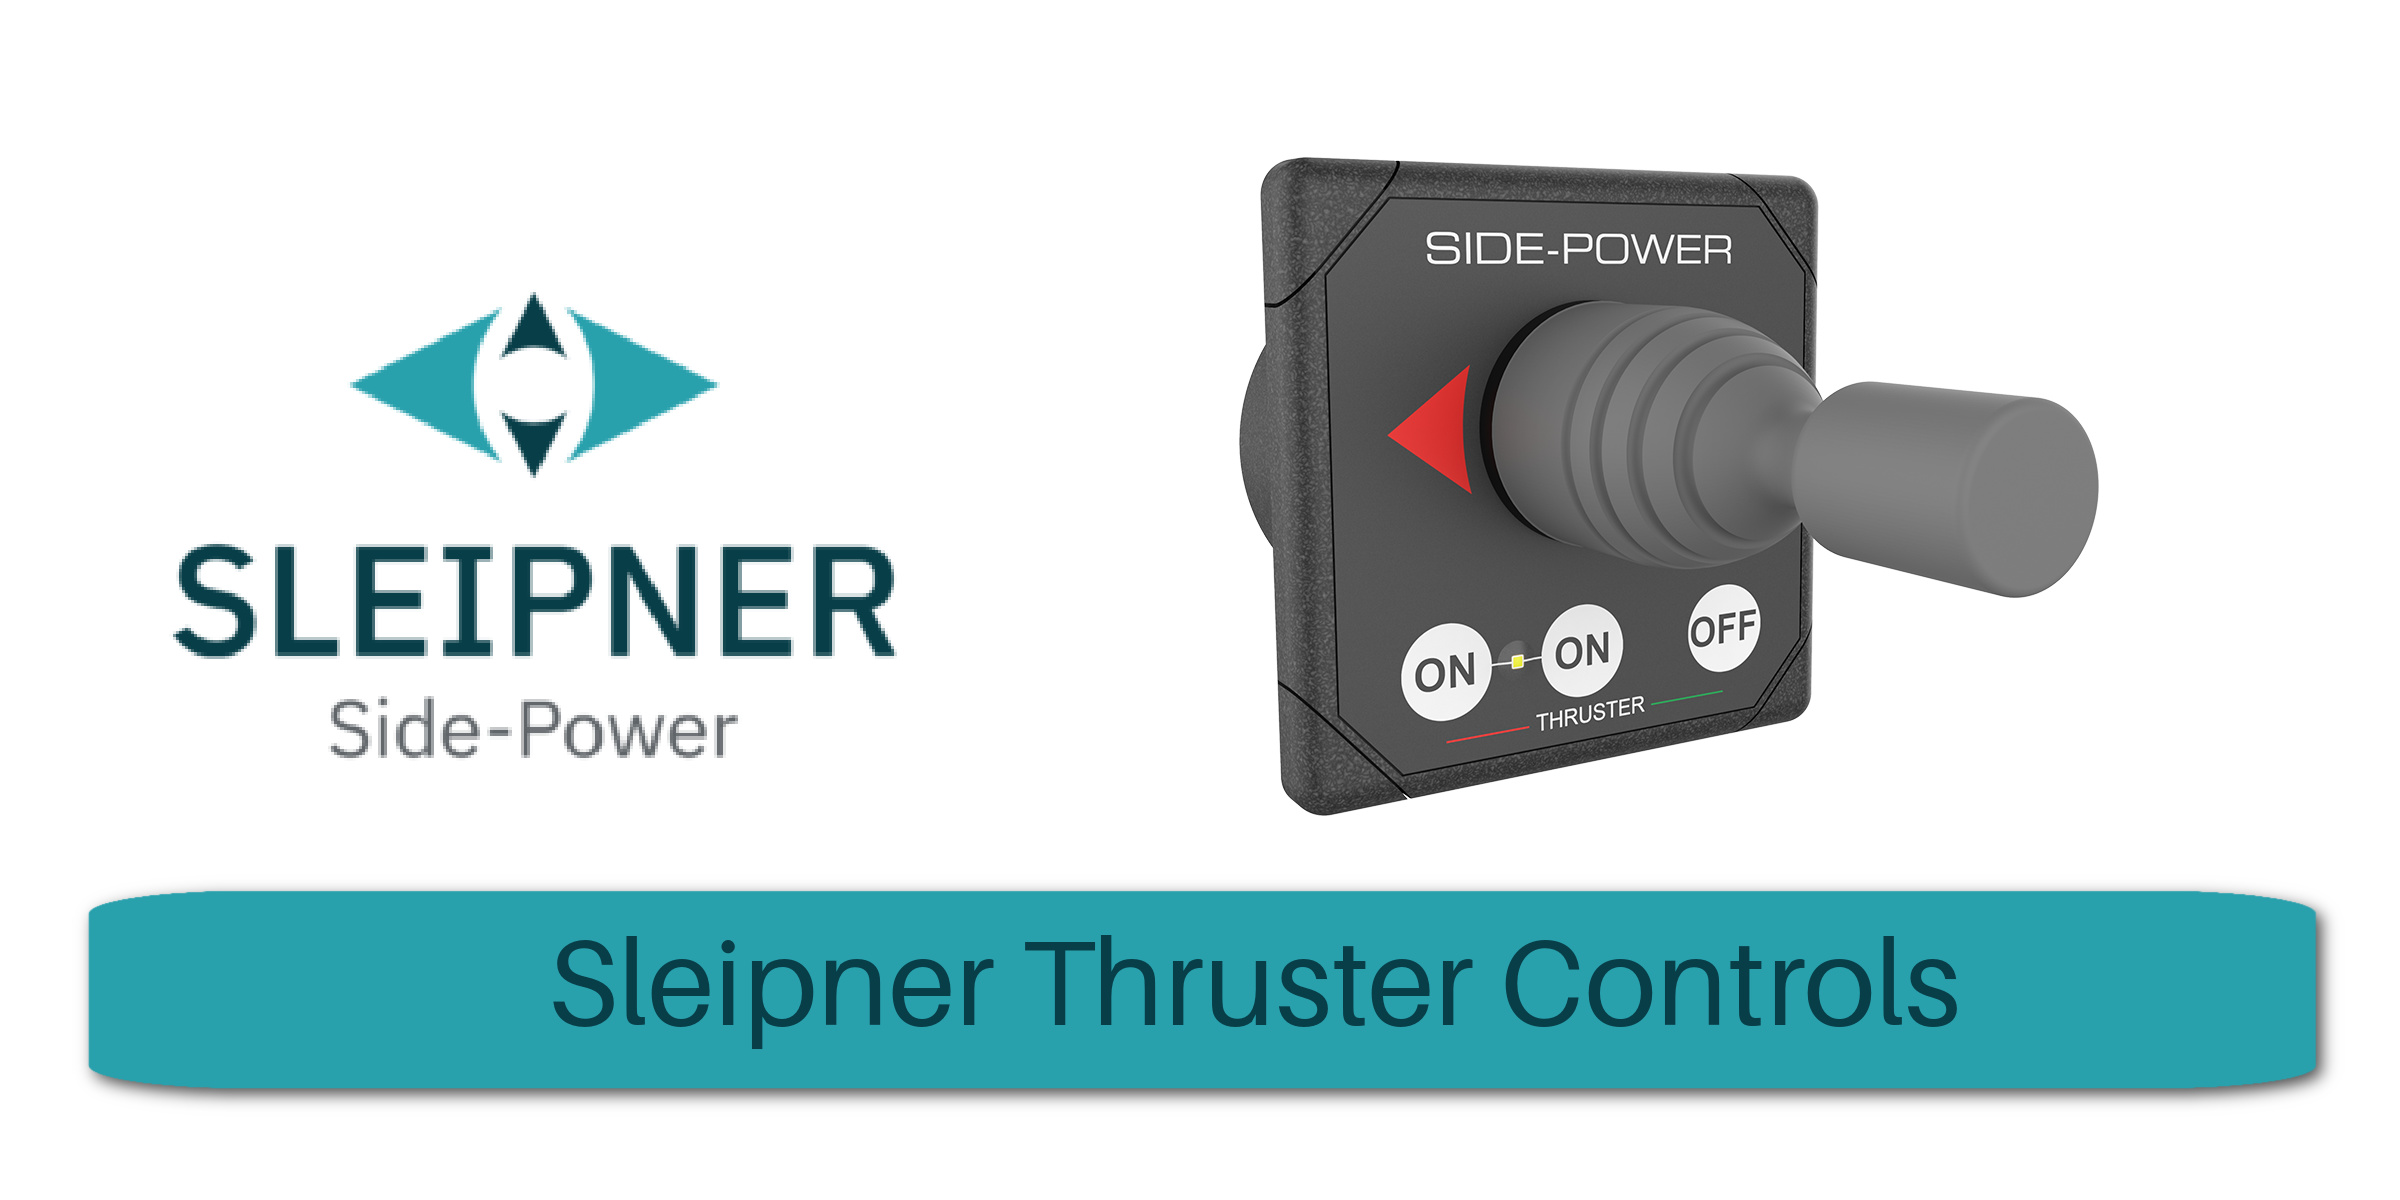 Sleipner Thruster Controls